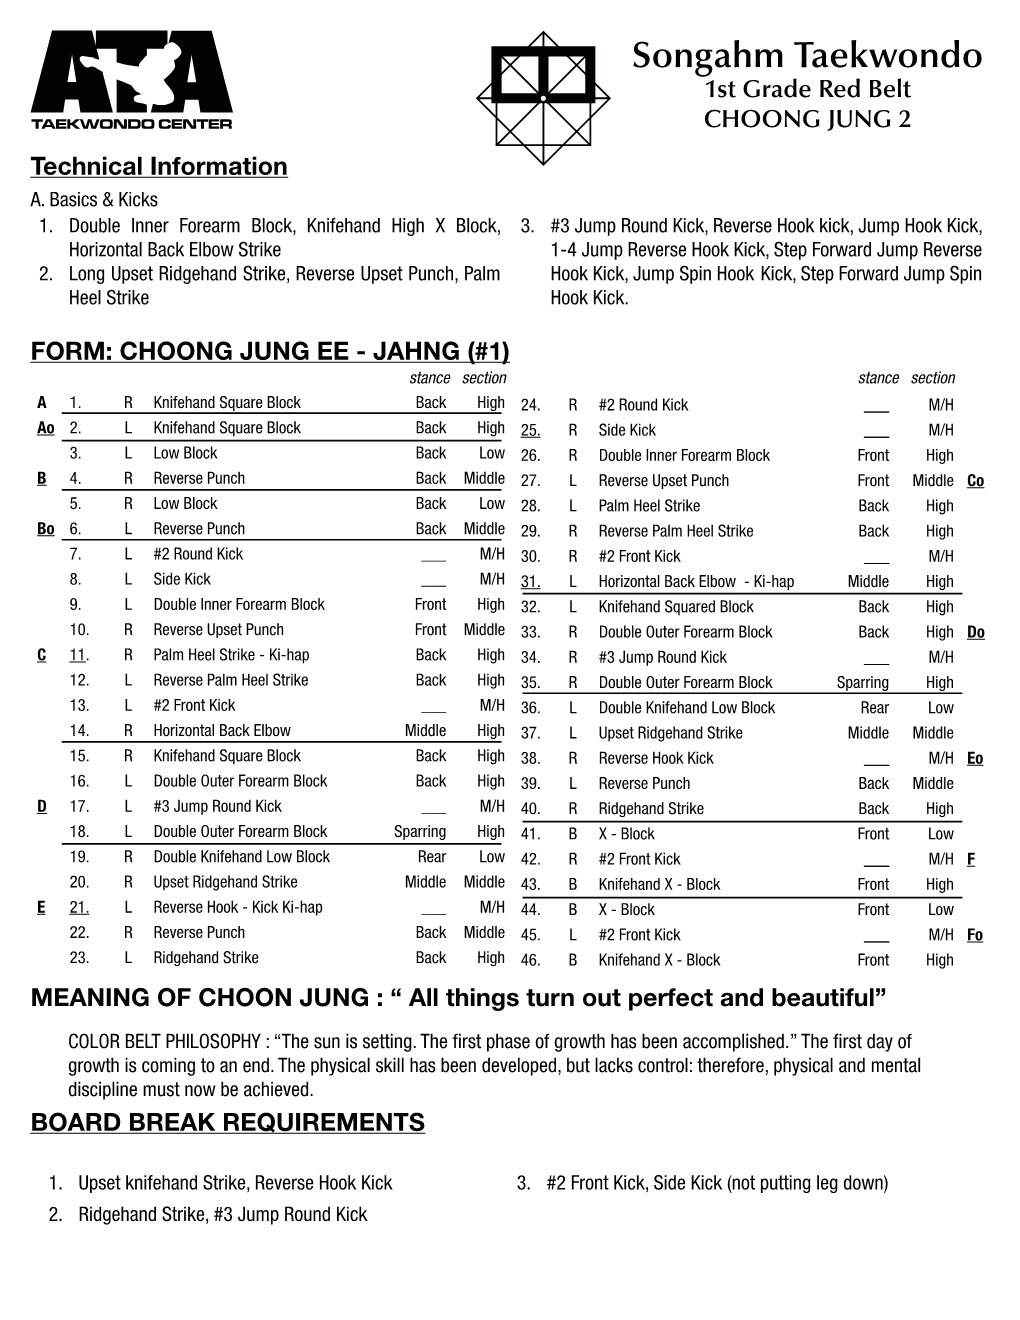 Songahm Taekwondo 1St Grade Red Belt CHOONG JUNG 2 Technical Information A